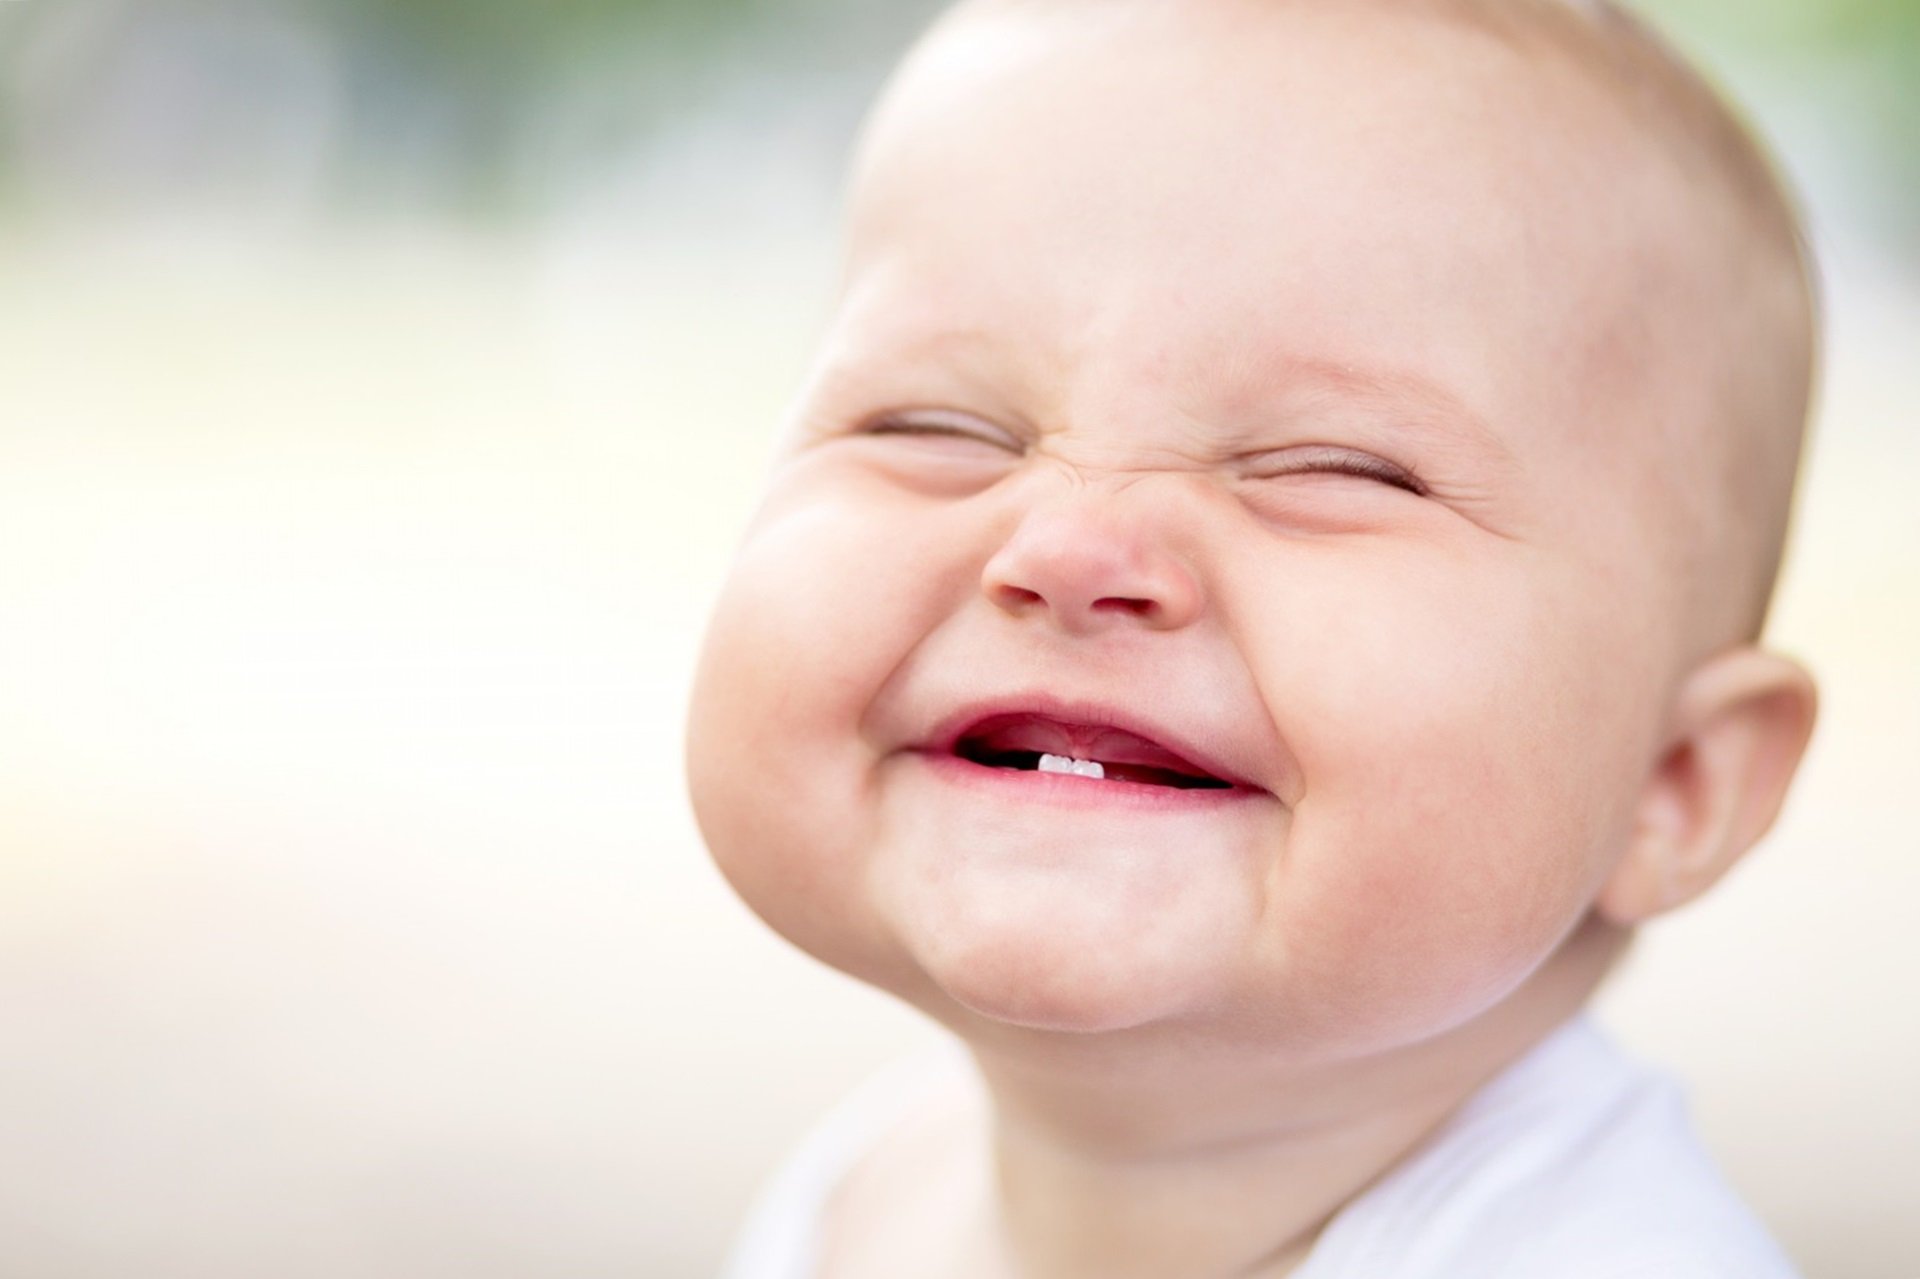 Блювота при прорізуванні зубів у дітей: причини і лікування